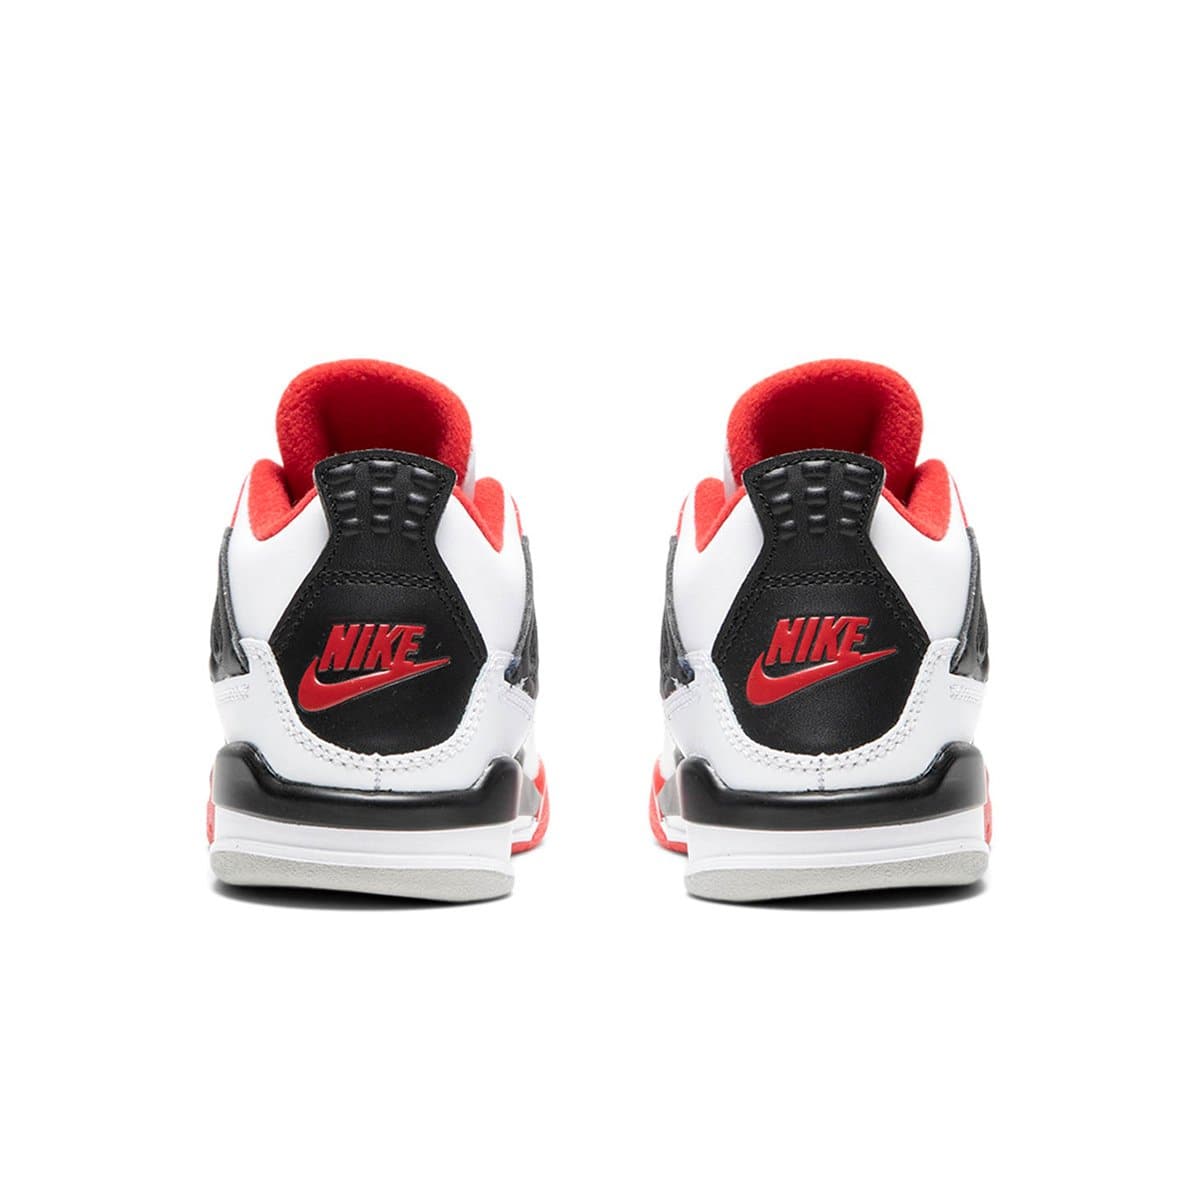 Air Jordan Shoes AIR JORDAN 4 RETRO (PS)